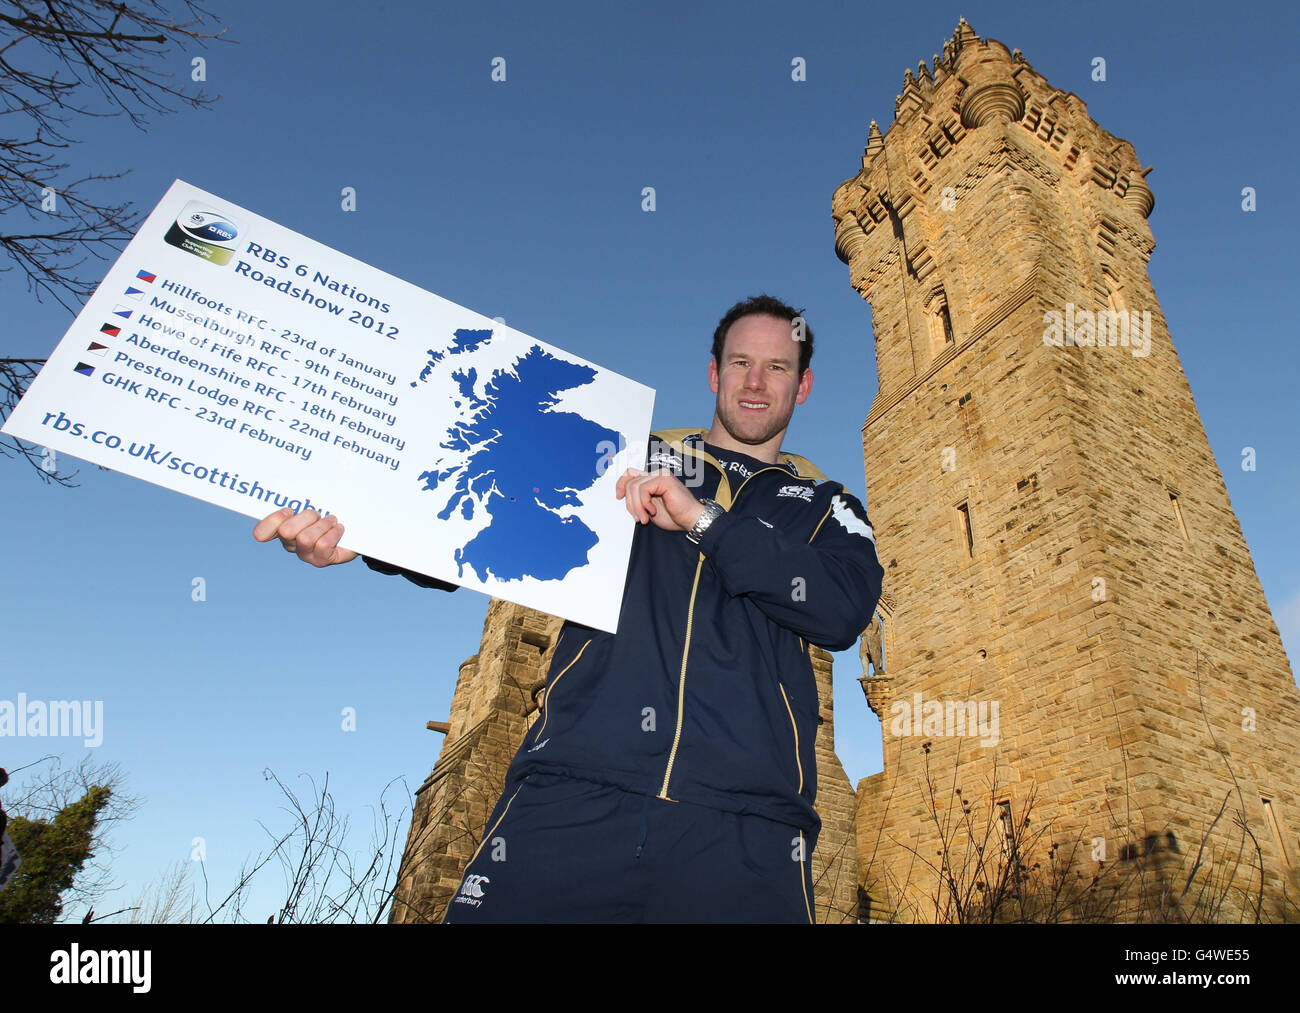 Schottlands Graeme Morrison während einer Fotowand am National Wallace Monument, Stirling. Stockfoto